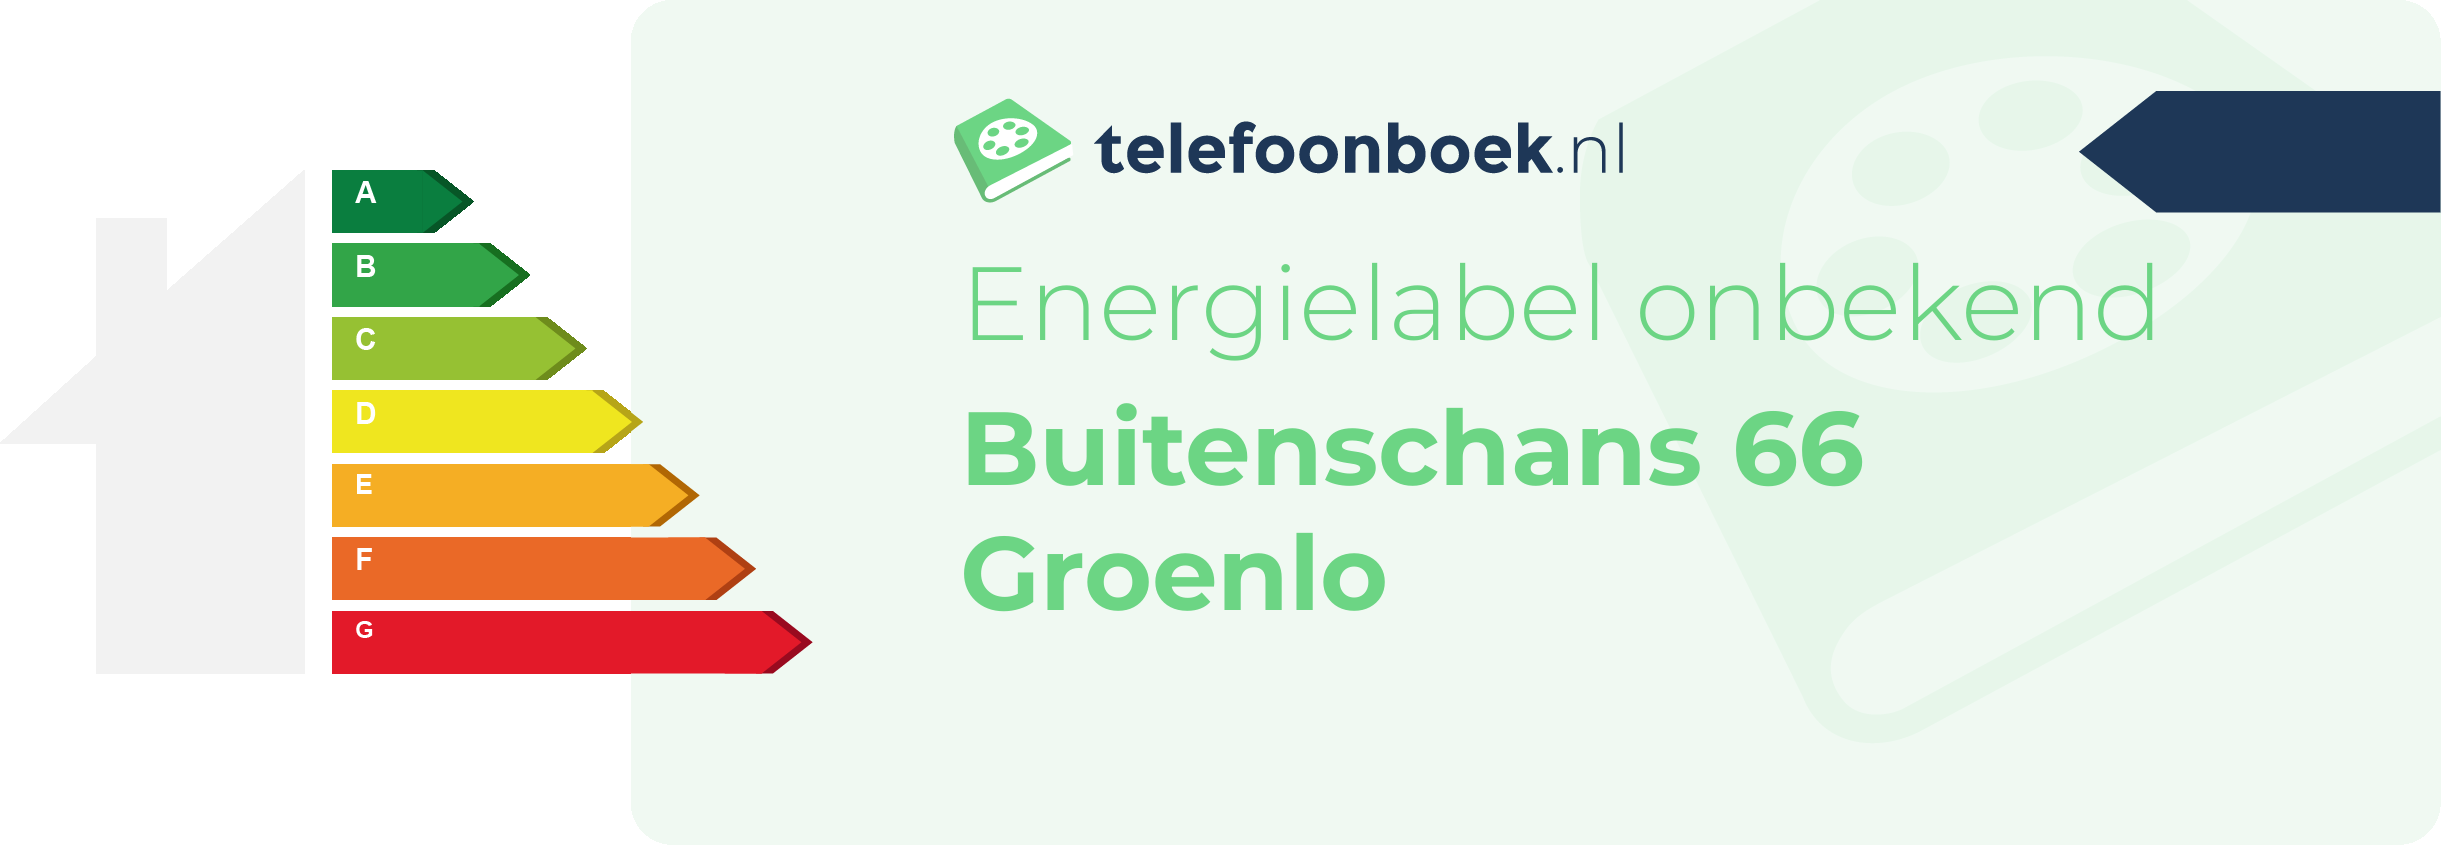 Energielabel Buitenschans 66 Groenlo